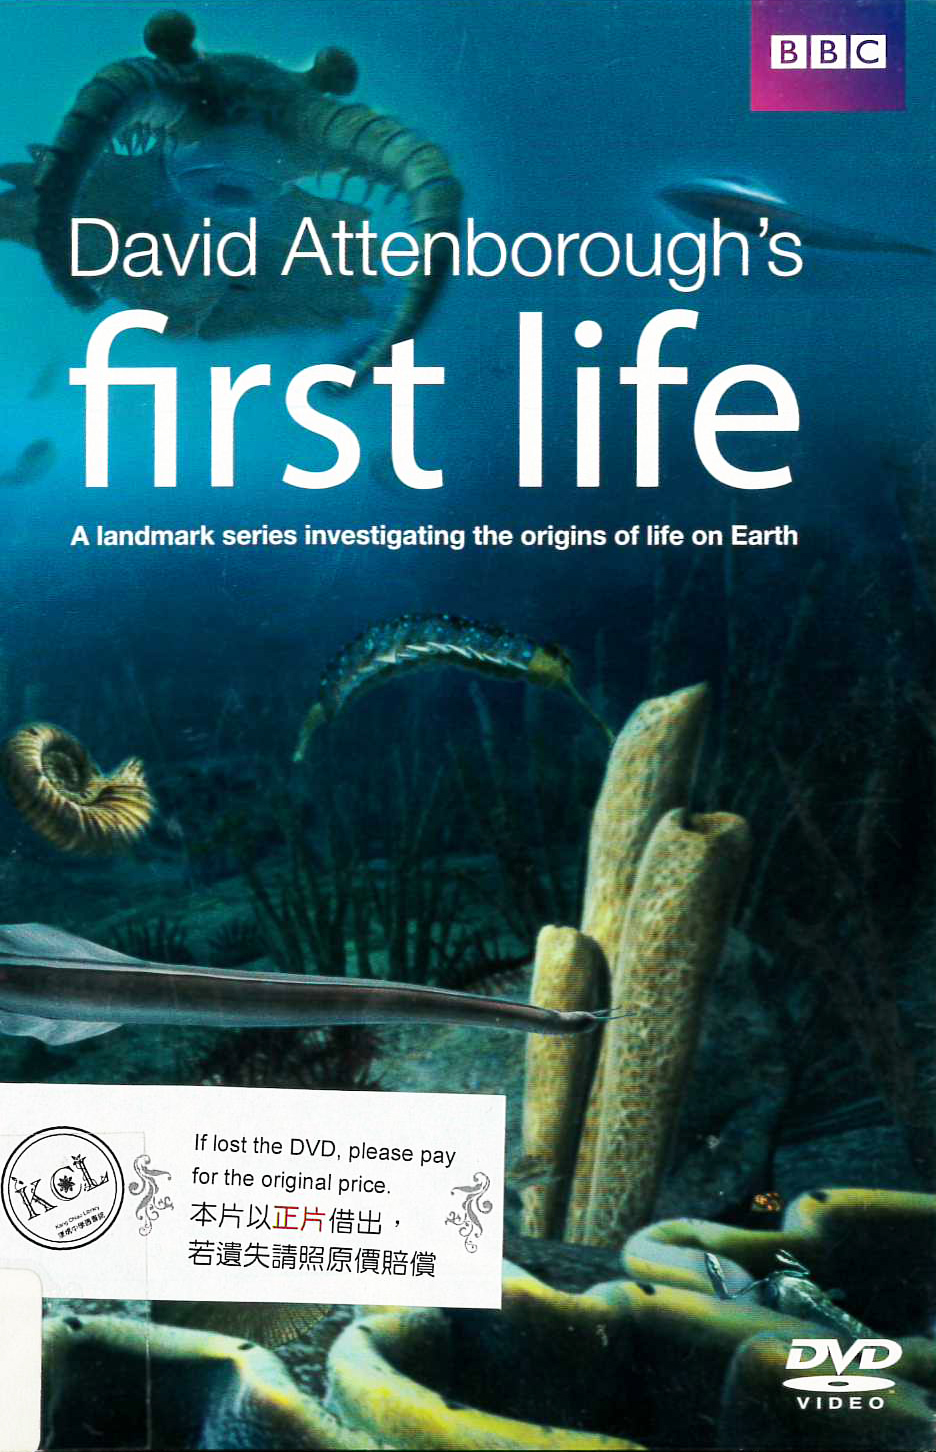 生命起源 : First life : 大衛艾登堡祿爵士